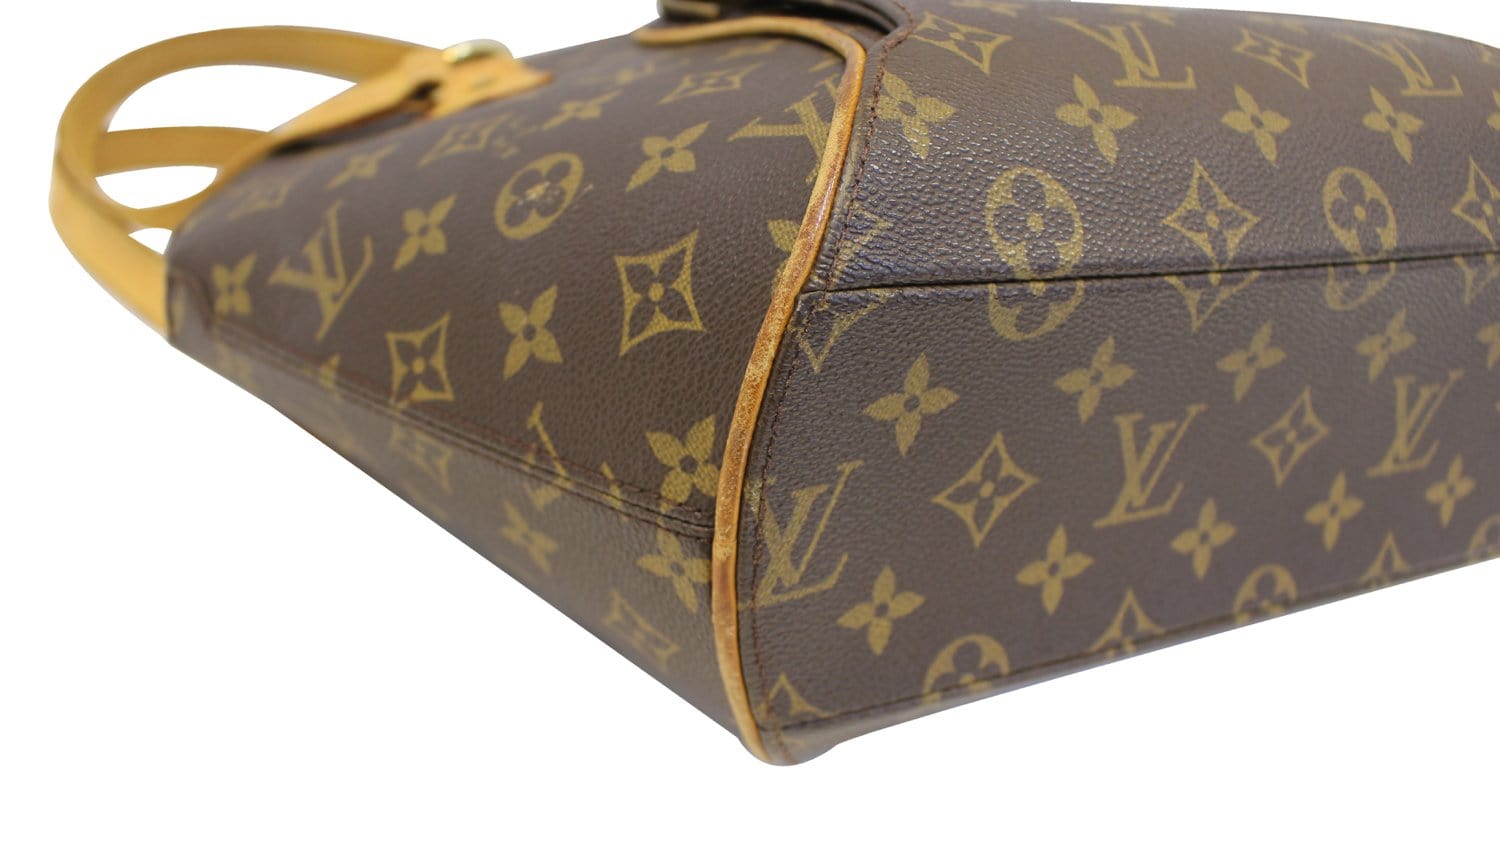 Louis Vuitton Ellipse Bag Match Monogram Canvas BB - ShopStyle